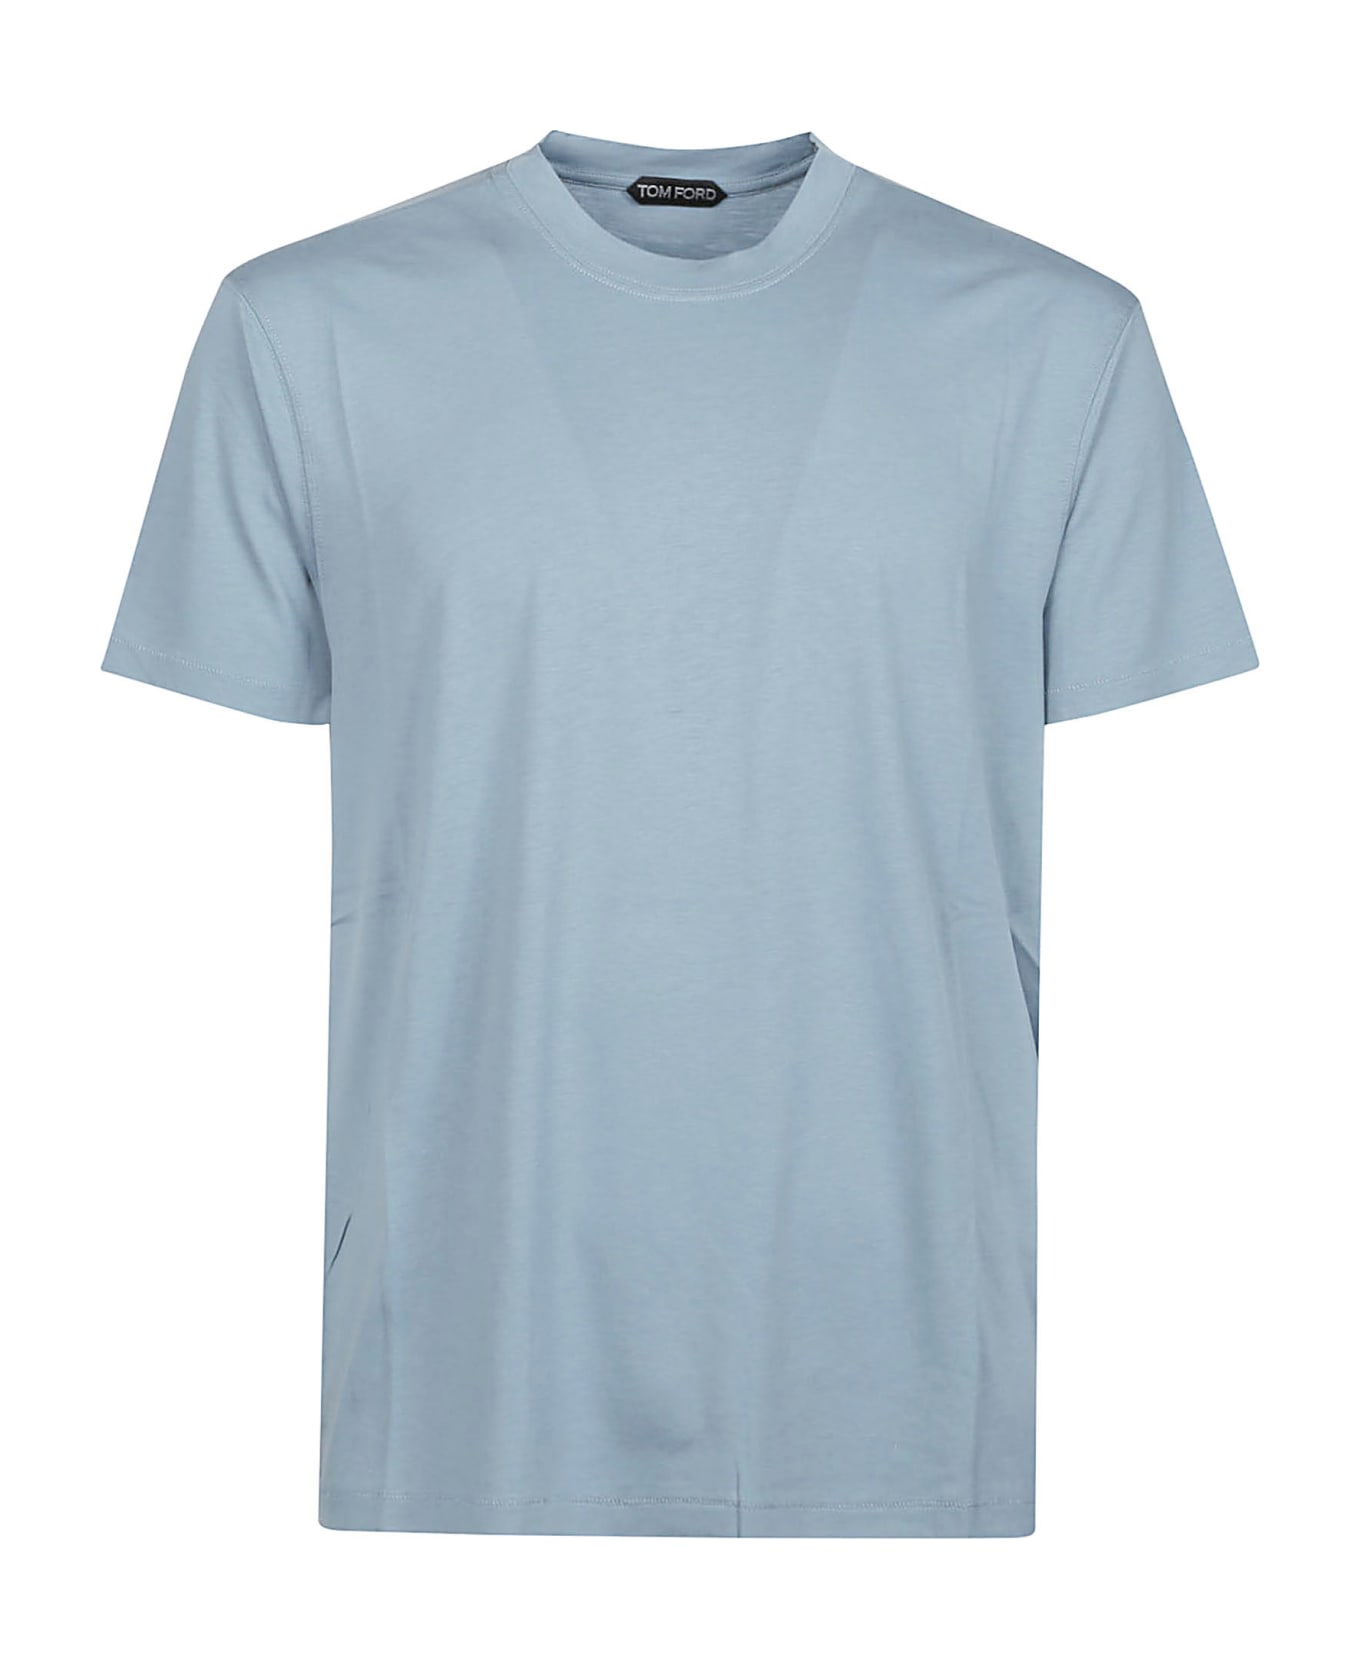 Tom Ford T-shirt - SKY BLUE